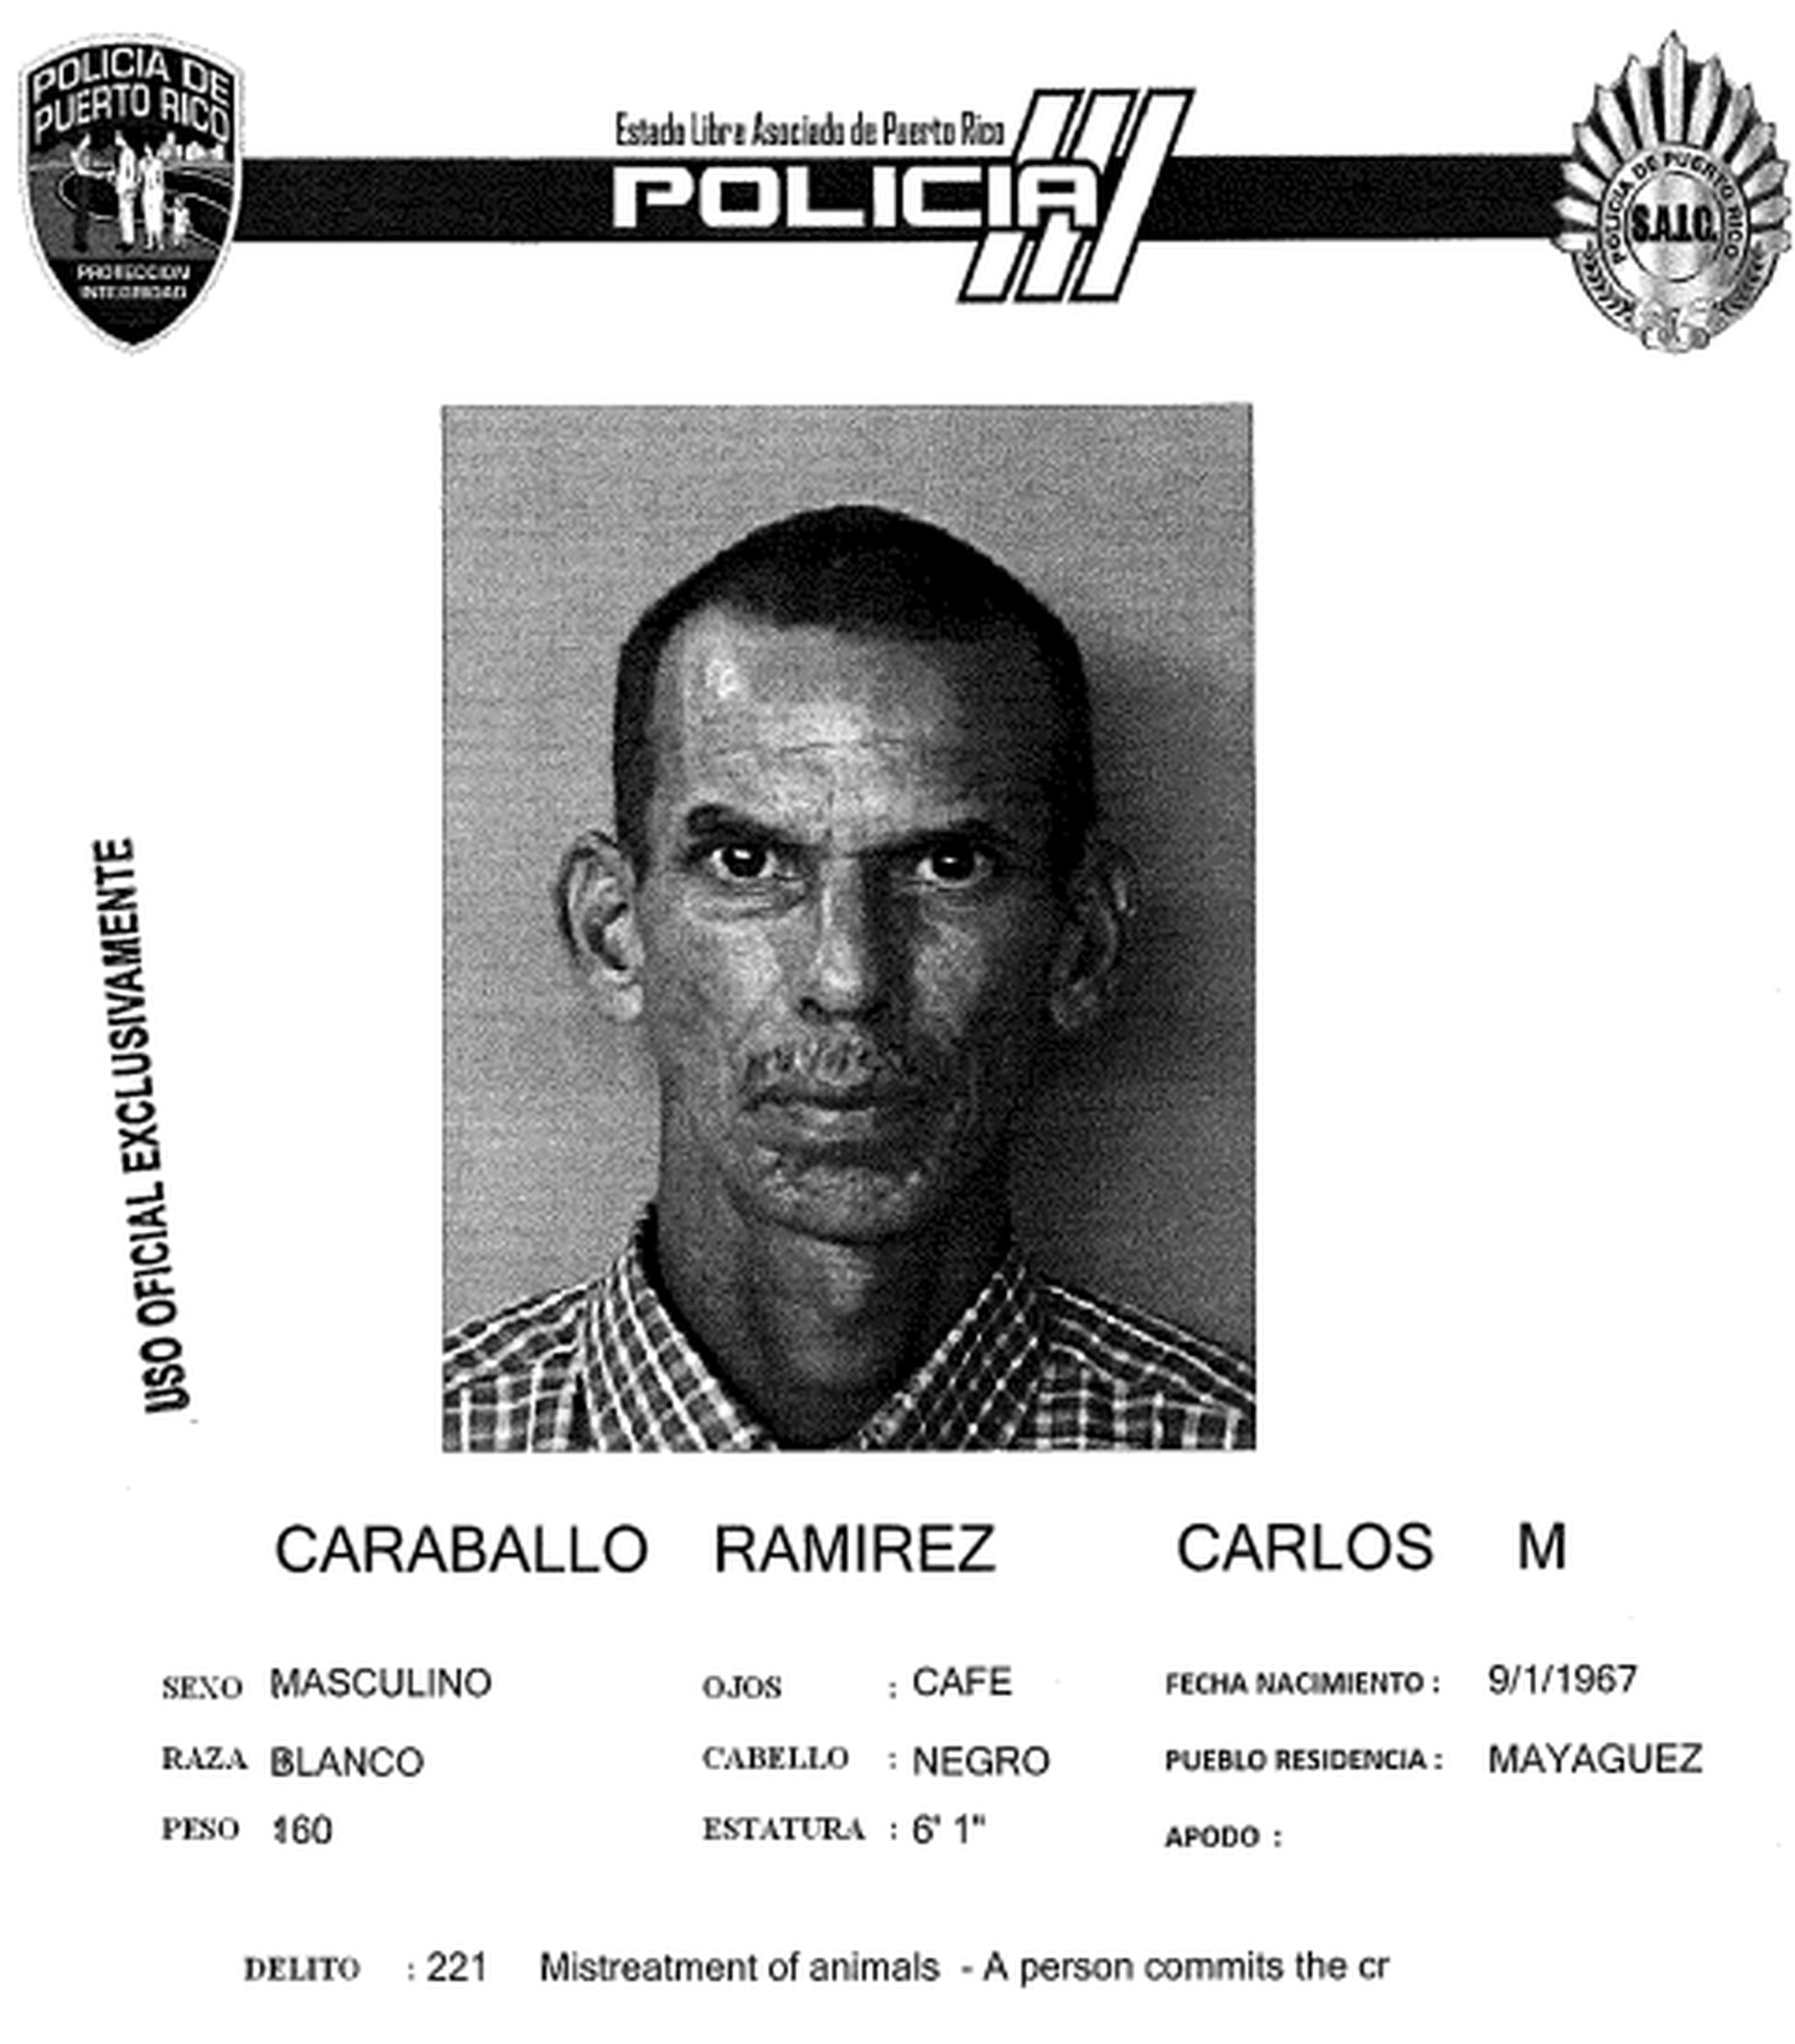 Ficha de Carlos Caraballo Ramírez de 56 años y residente de Mayagüez.